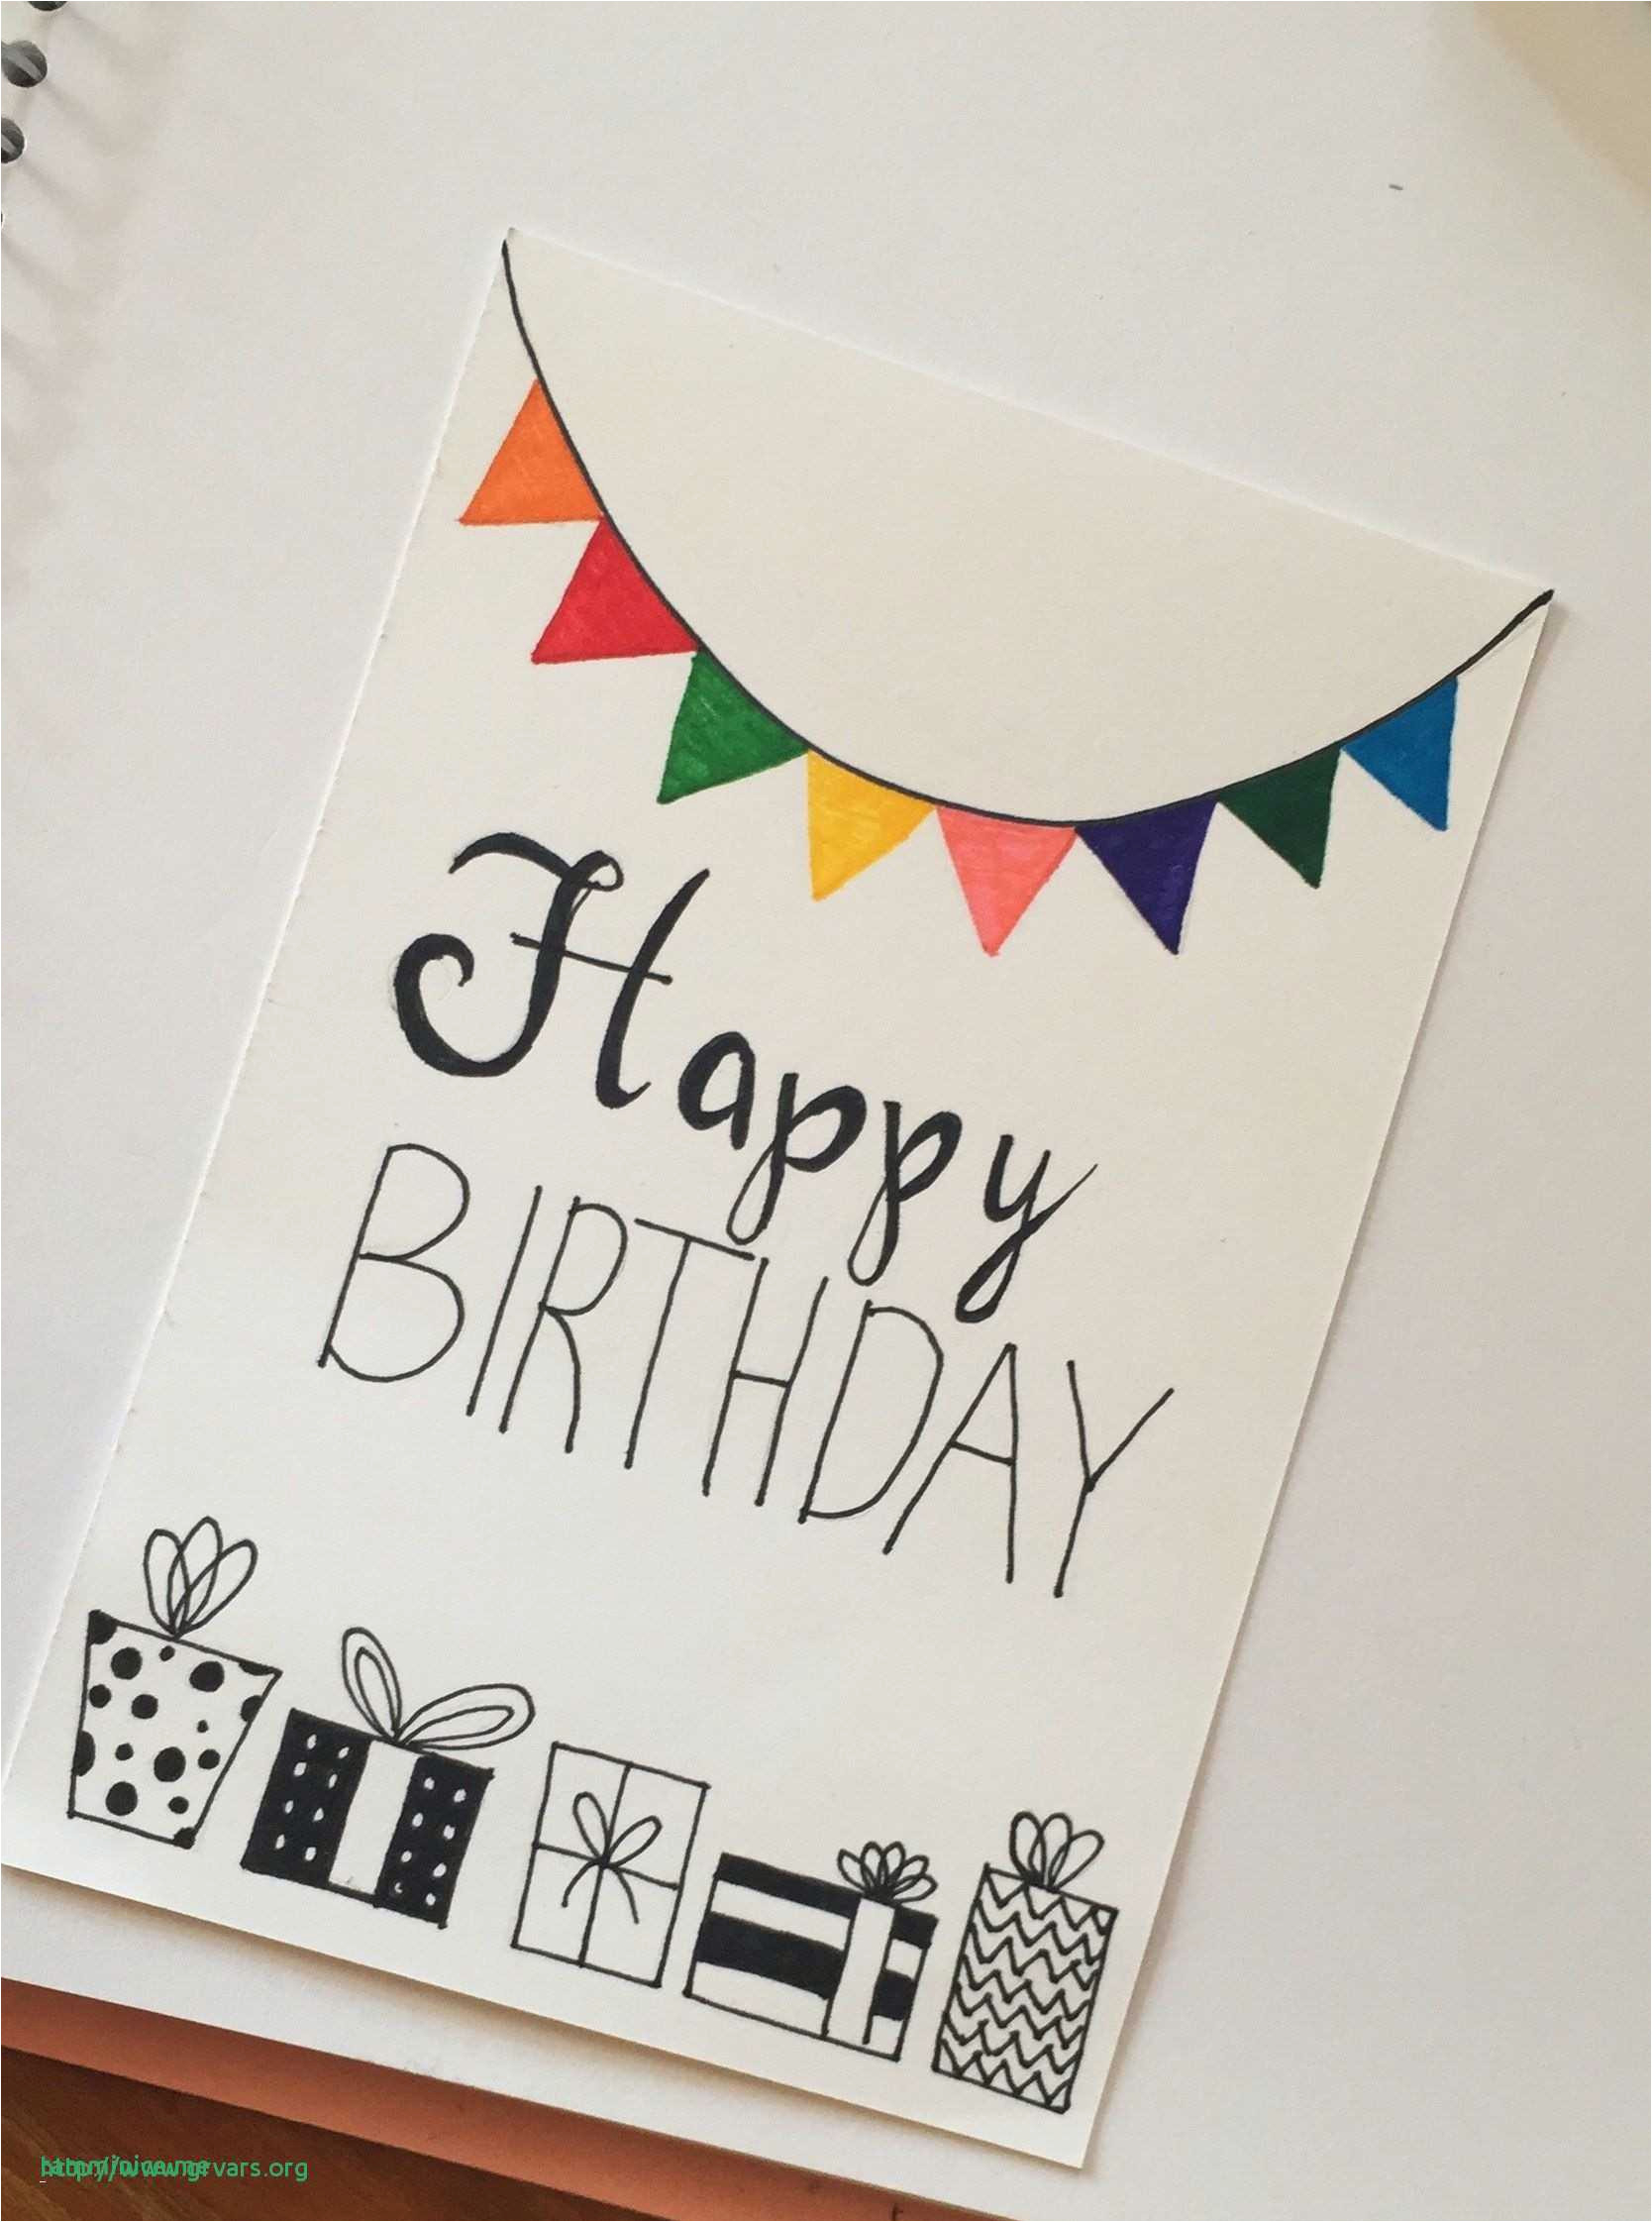 Self Made Birthday Card Ideas Diy Birthday Card Design Ideas Simple Handmade Birthday Cards